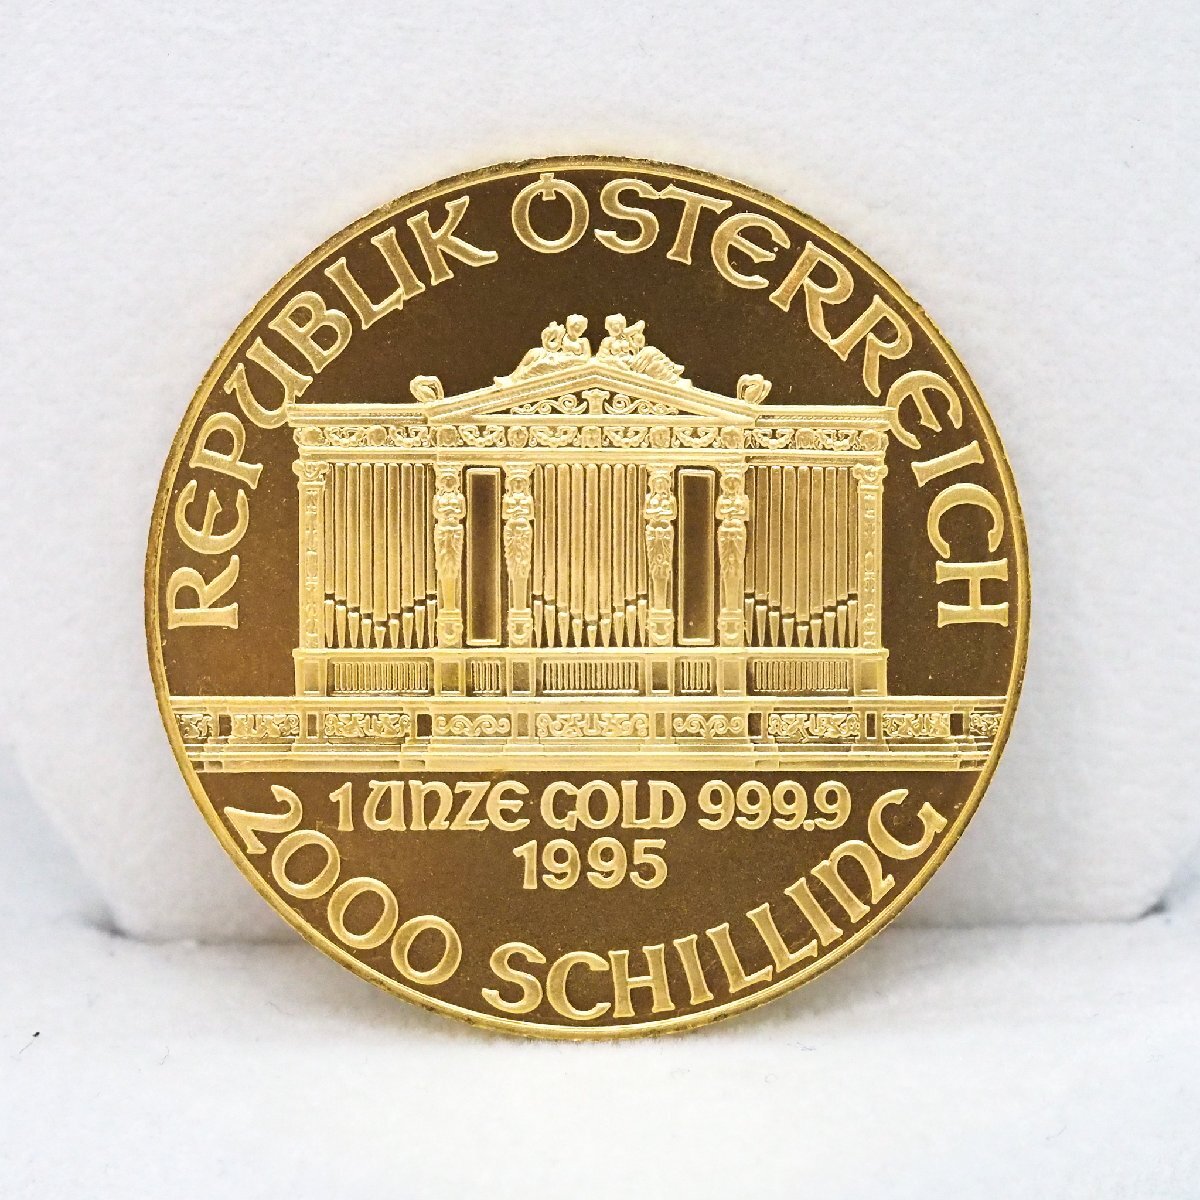 K24 Austria we n gold coin is - moni -1995 1oz 31.1g